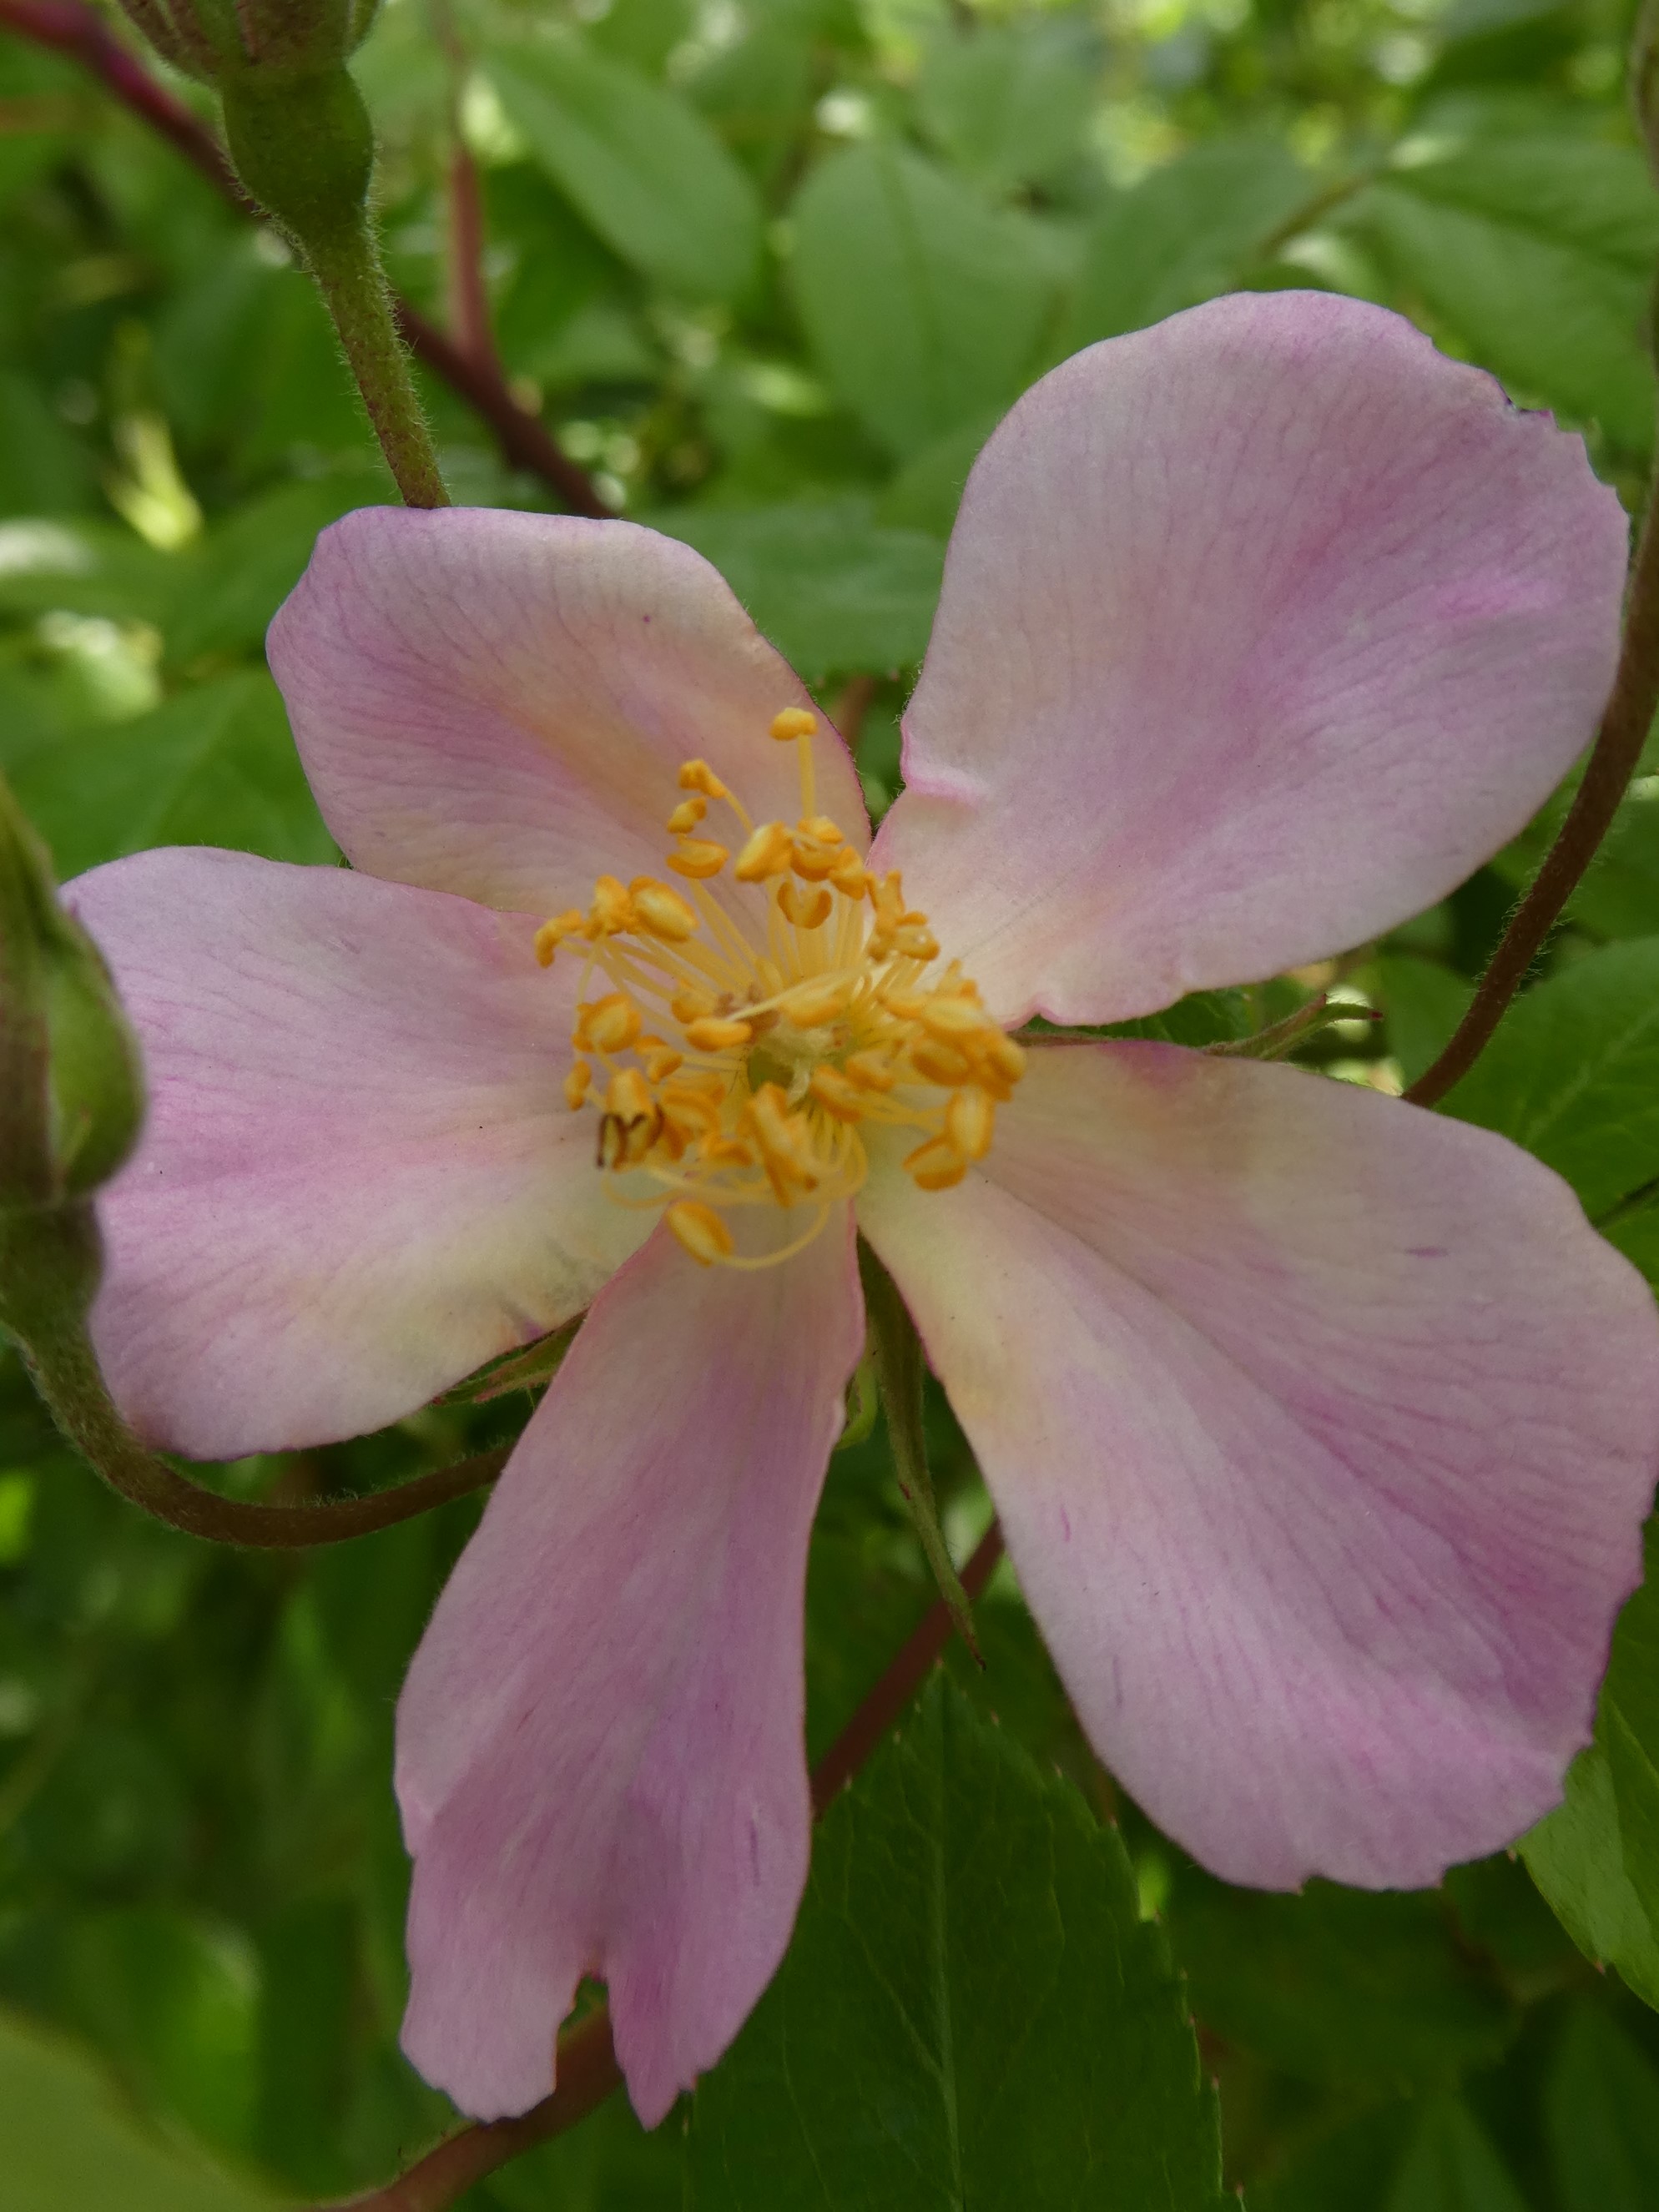 Brenda's shrub rose 'Plaisanterie' bloomed May 1 in her Coquitlam garden